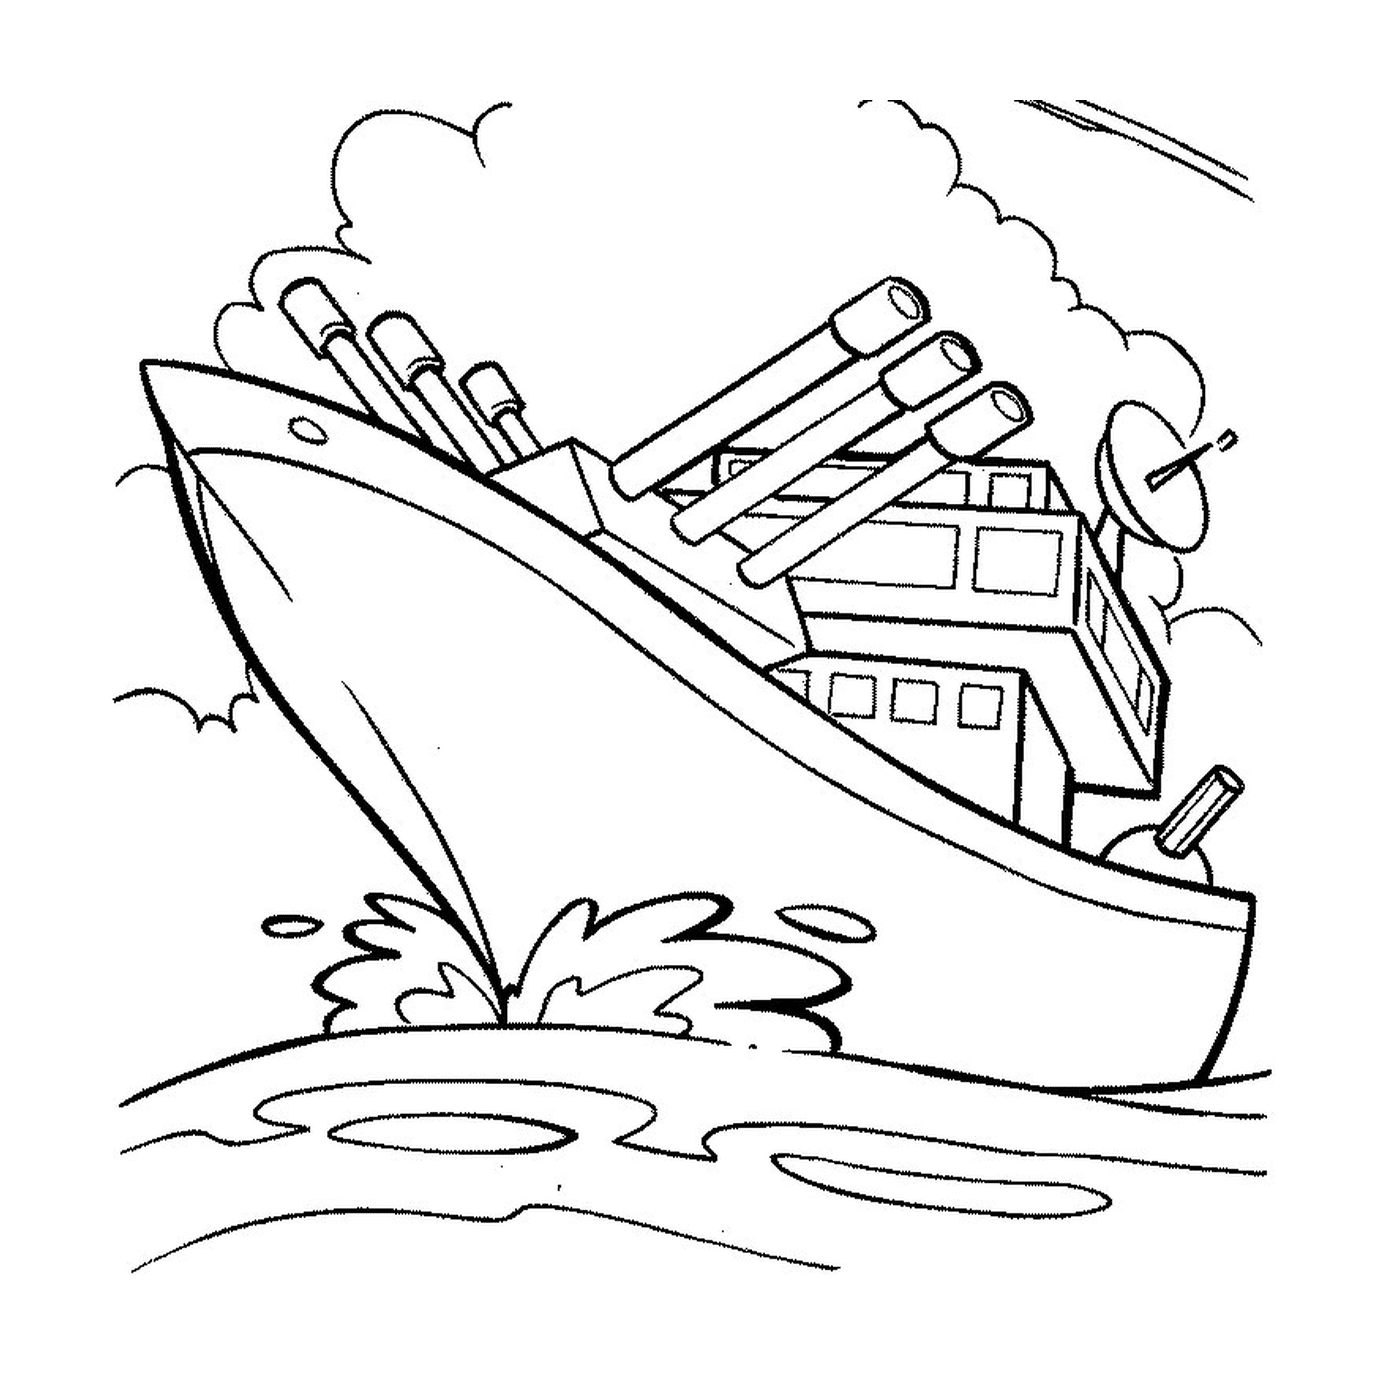   Un bateau de guerre sur l'eau 